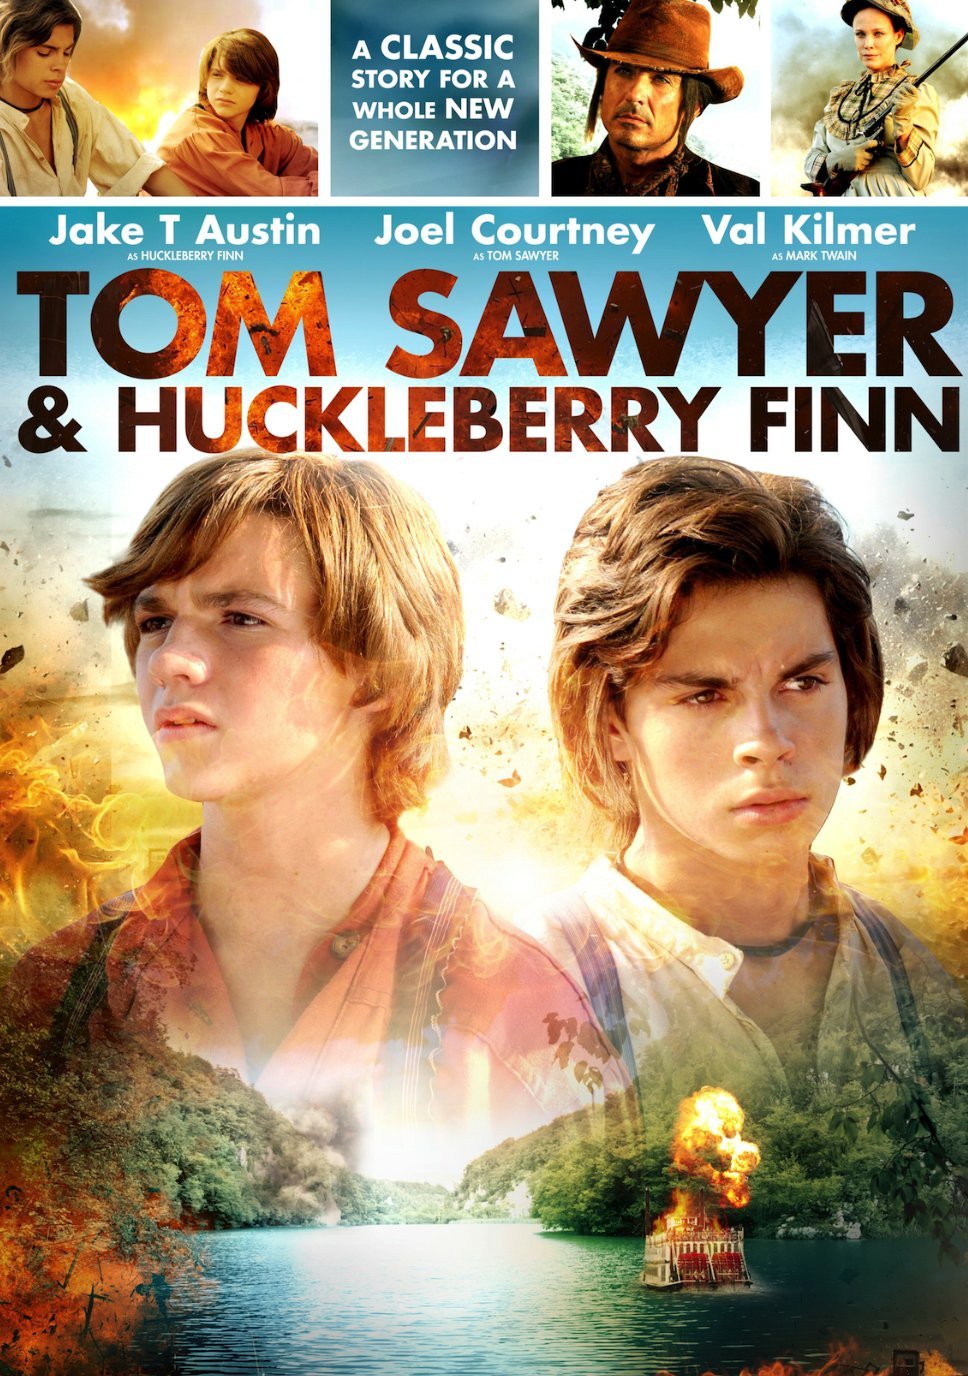 ดูหนังออนไลน์ฟรี Tom Sawyer & Huckleberry Finn (2014) ทอมซอว์เยอร์ & ฮัลเคิลเบอร์รี่ฟินน์